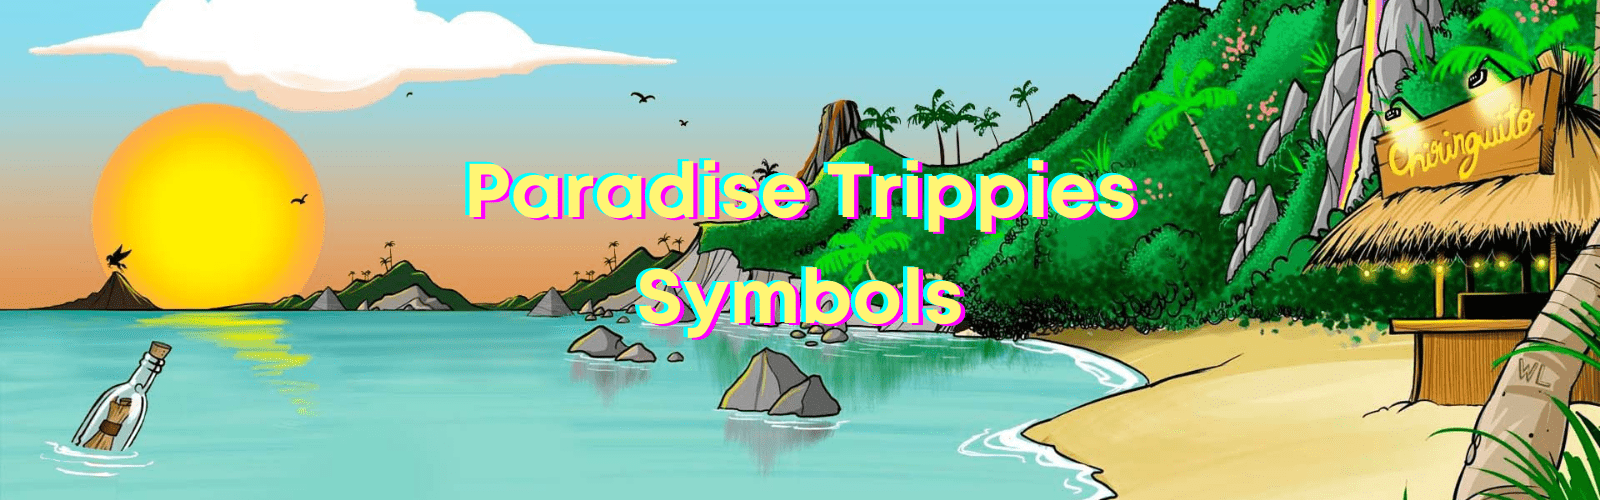 caleta paradise trippies symbols